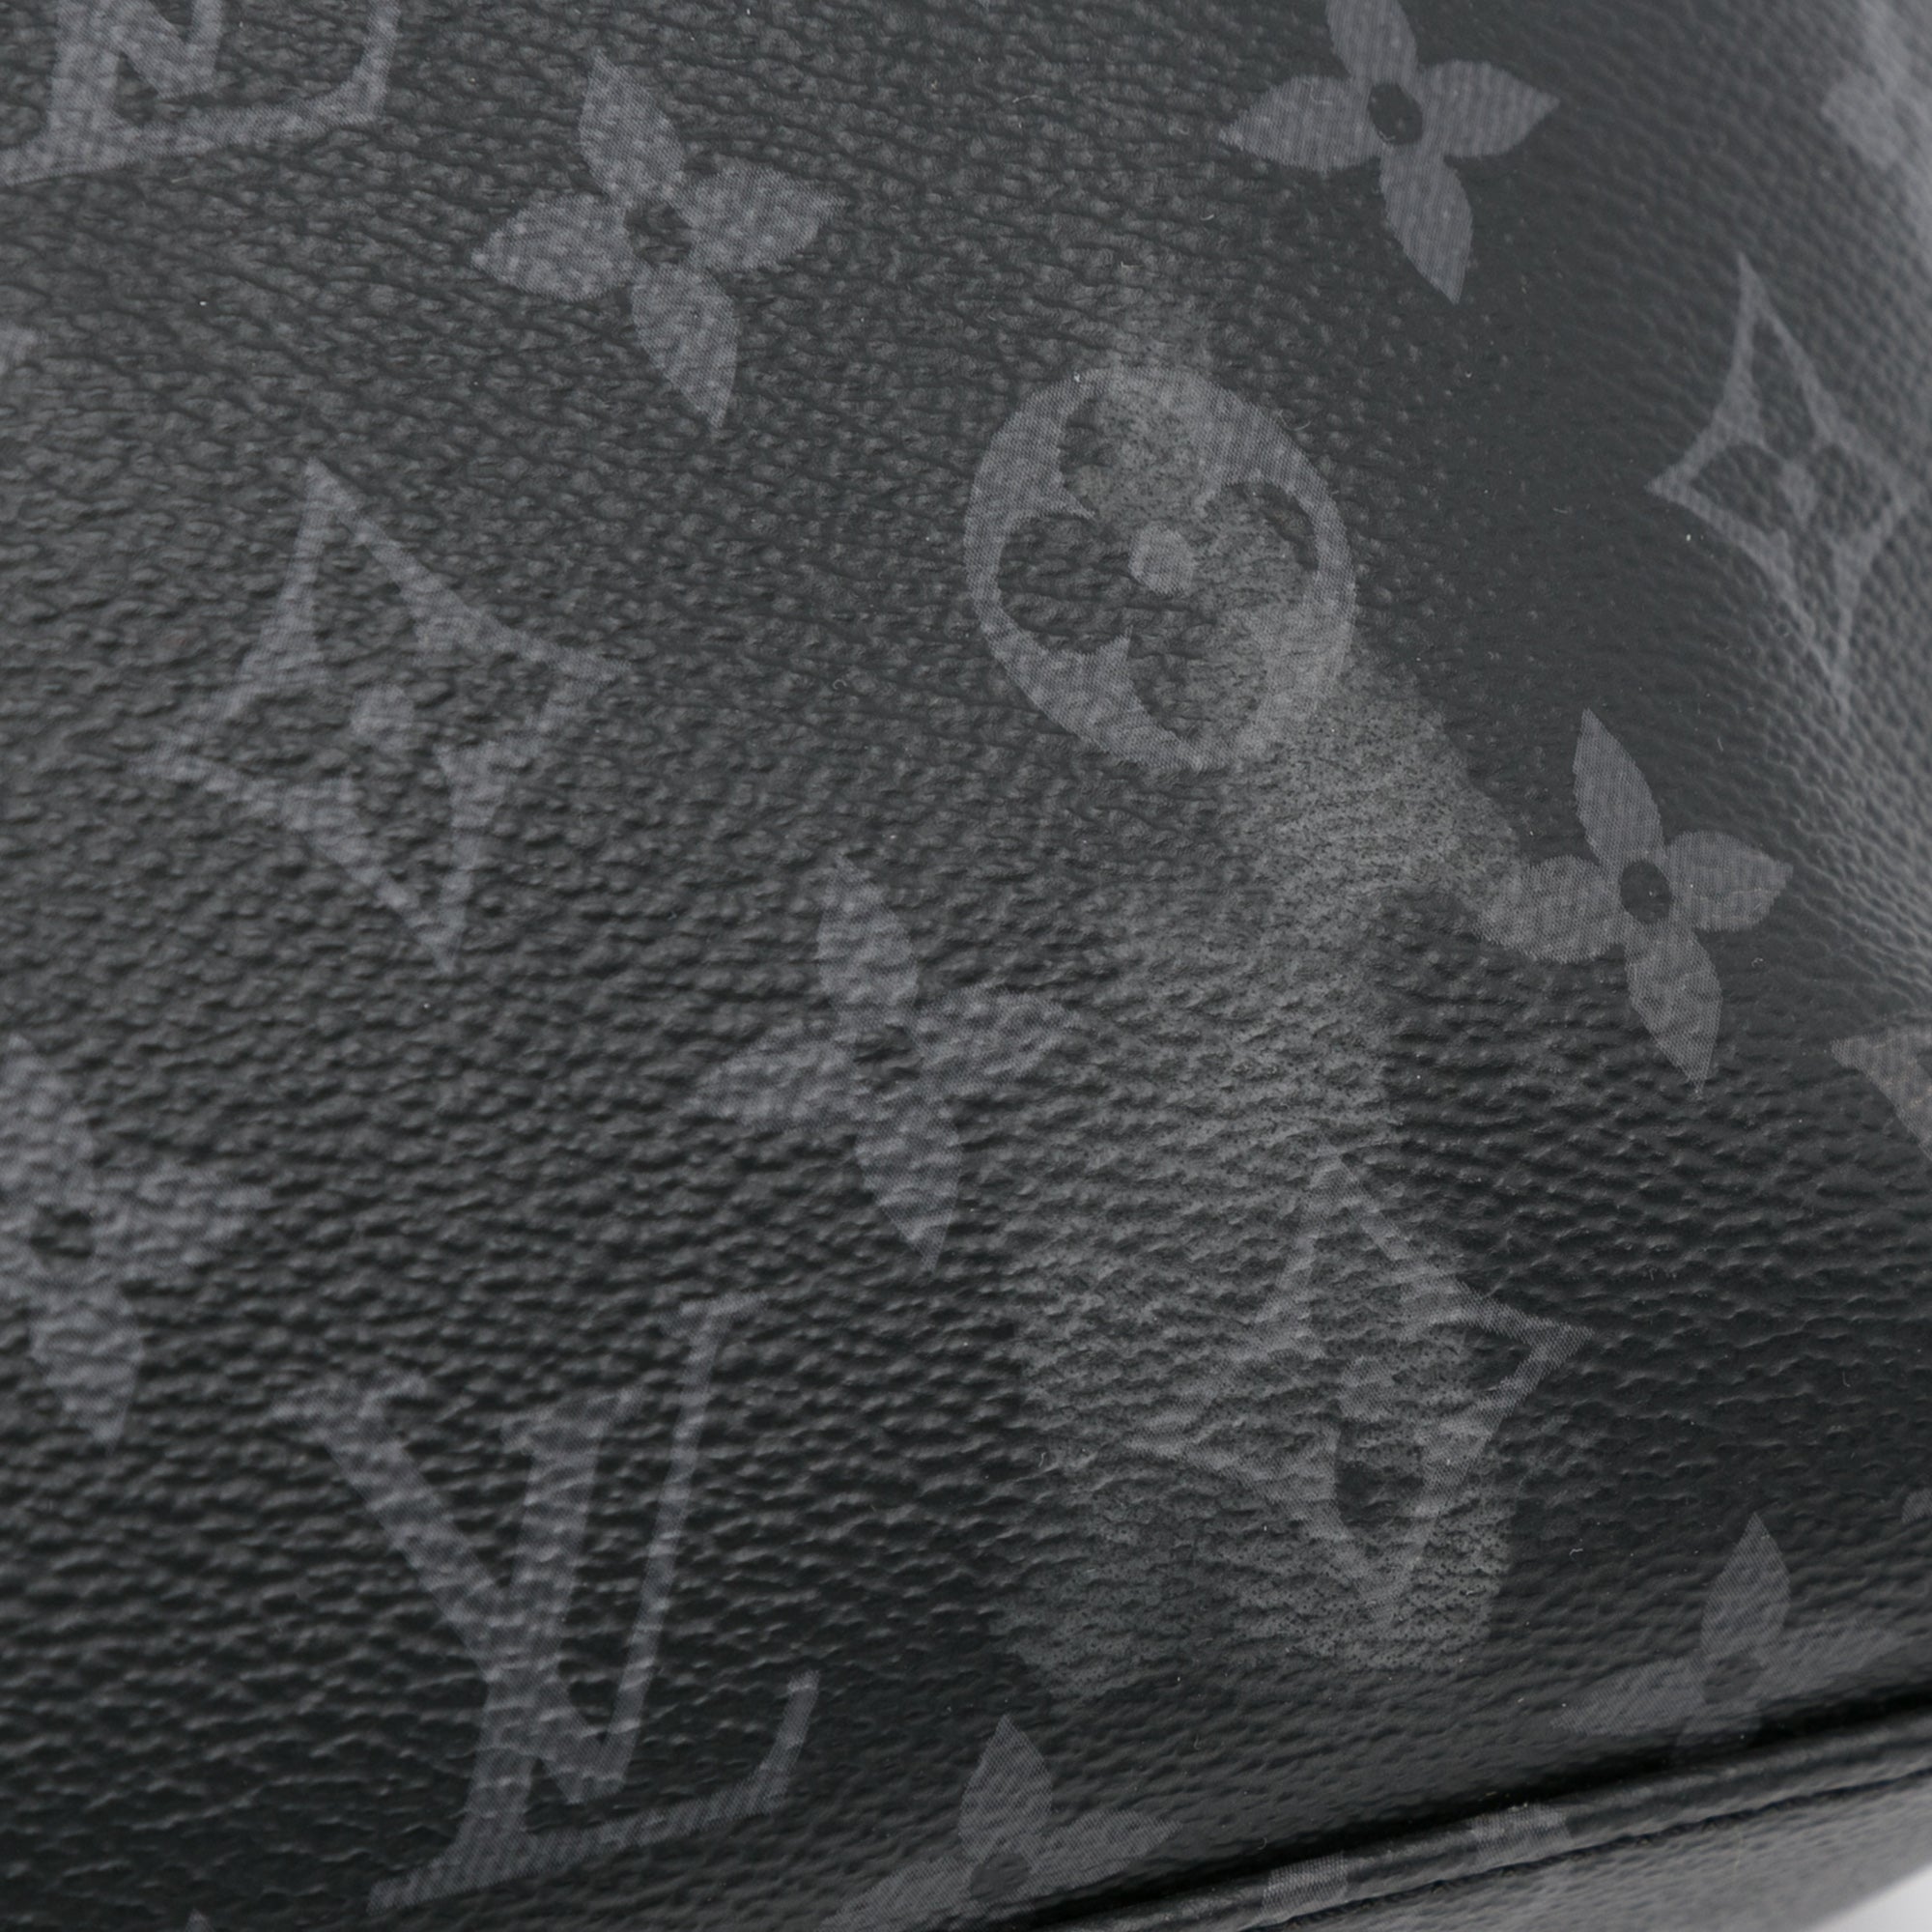 Louis Vuitton Monogram Eclipse Throw Blanket - Black Throws, Pillows &  Throws - LOU723106